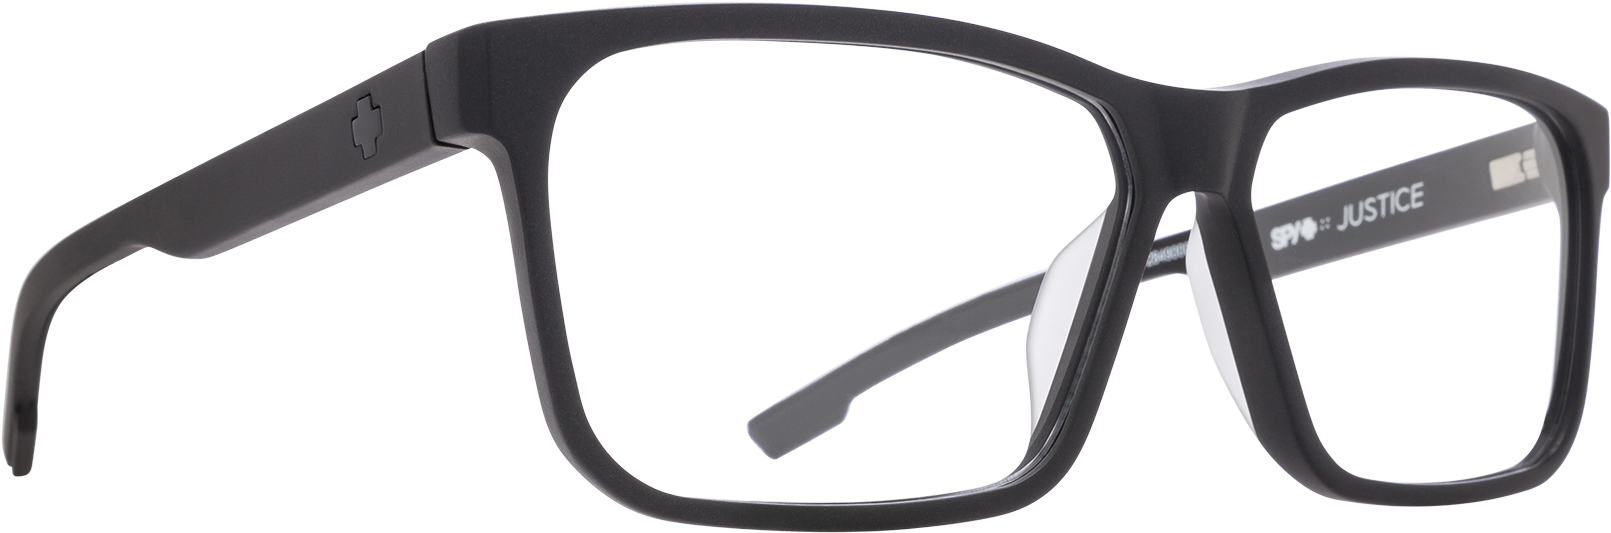 Black Designer Eyeglasses Transparent Background PNG image